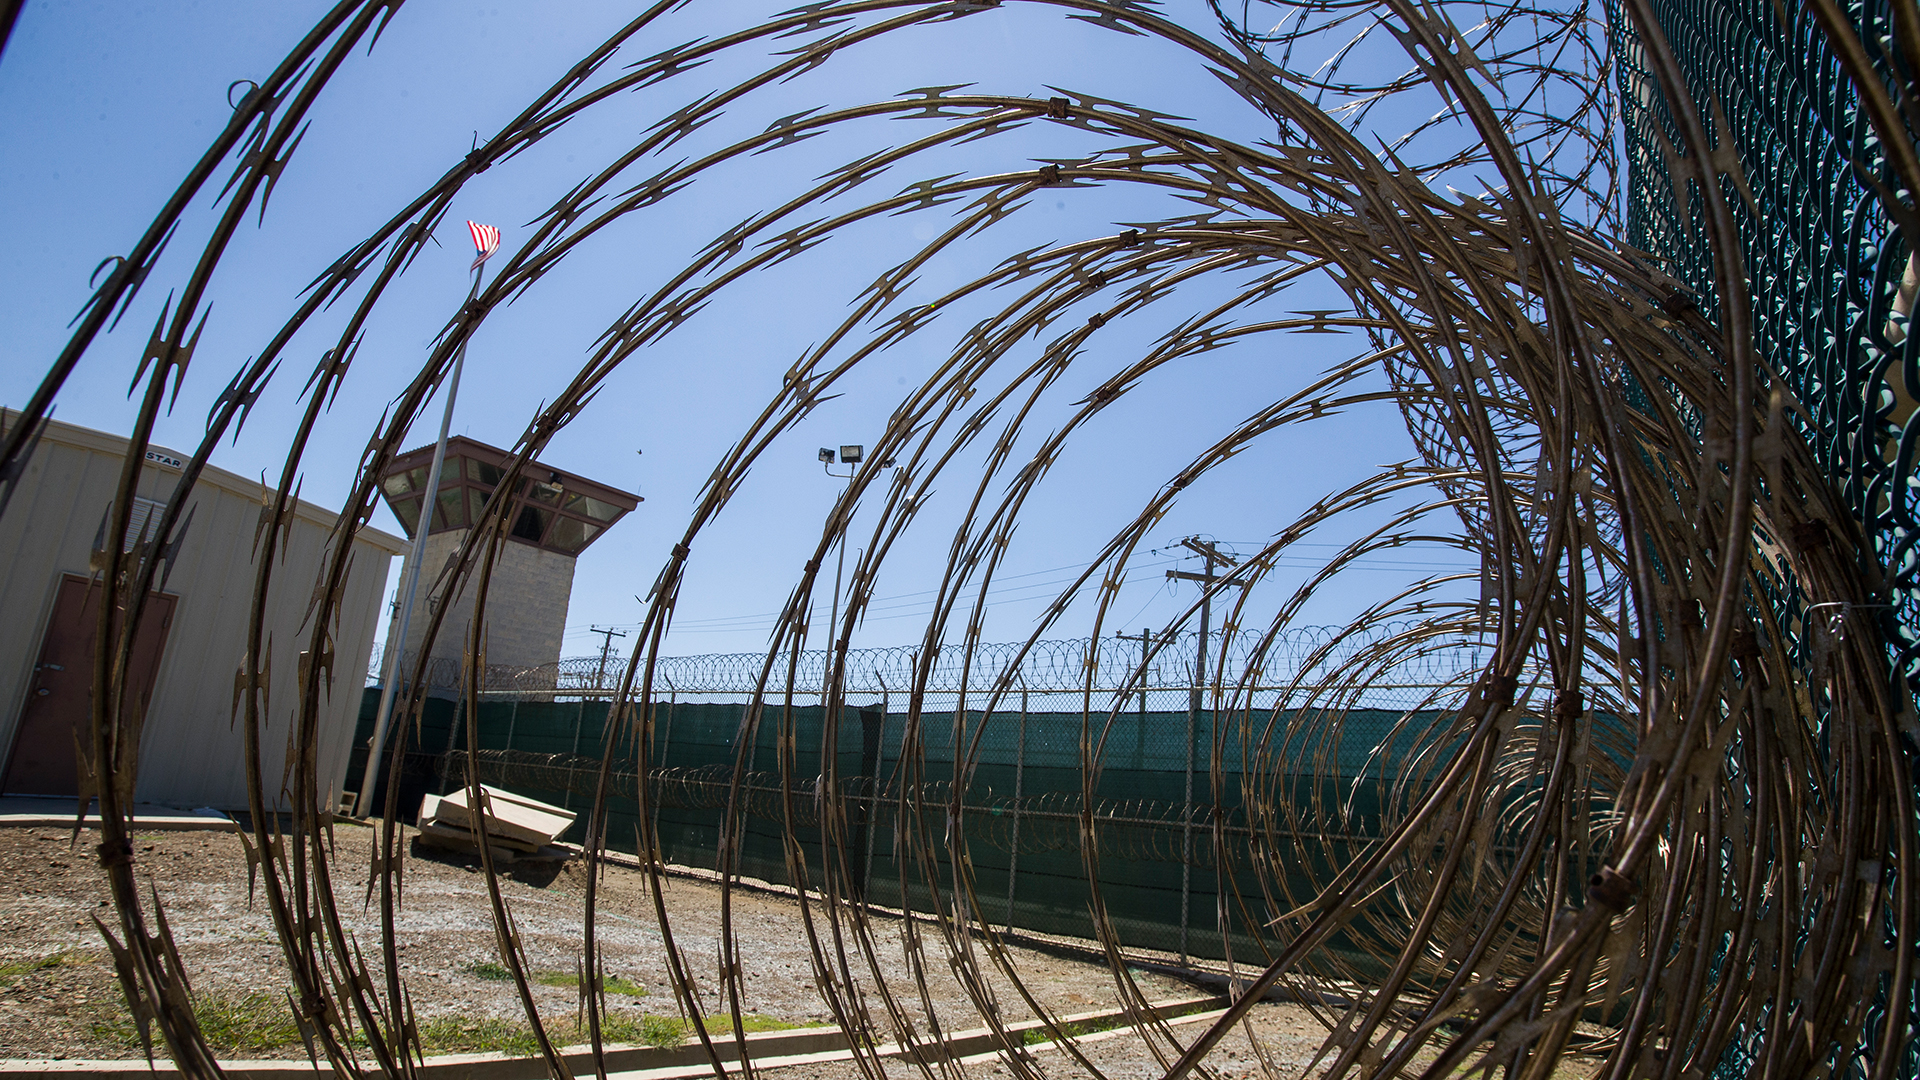 Der Kontrollturm ist durch den Stacheldraht im Inneren des Gefangenenlagers Camp VI im Marinestützpunkt Guantanamo Bay zu sehen.  | dpa